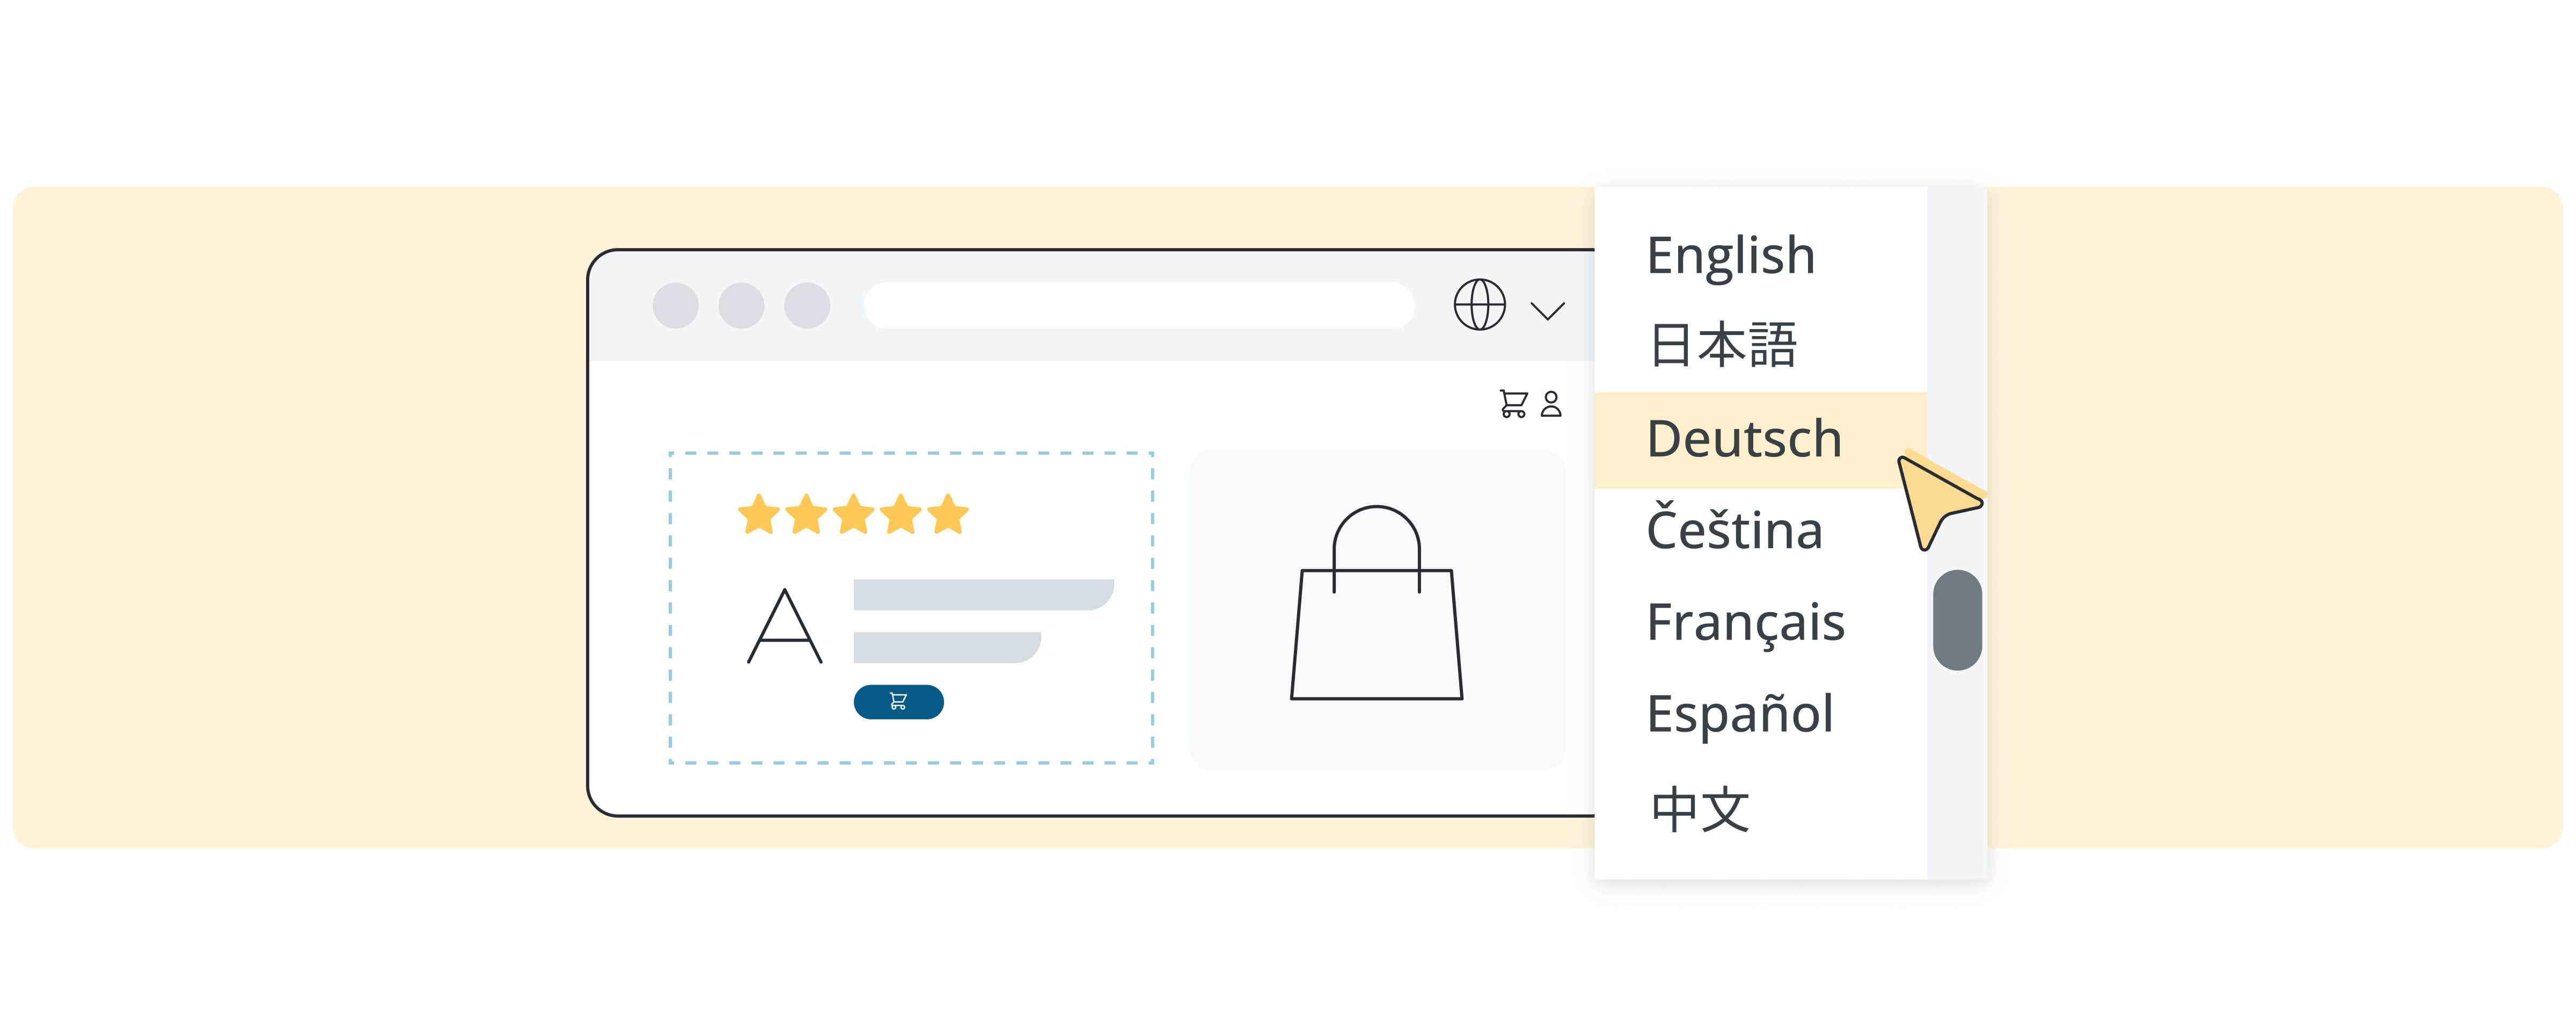 Interfaccia di un e-commerce con menu a tendina per selezionare la lingua in cui visualizzare il sito